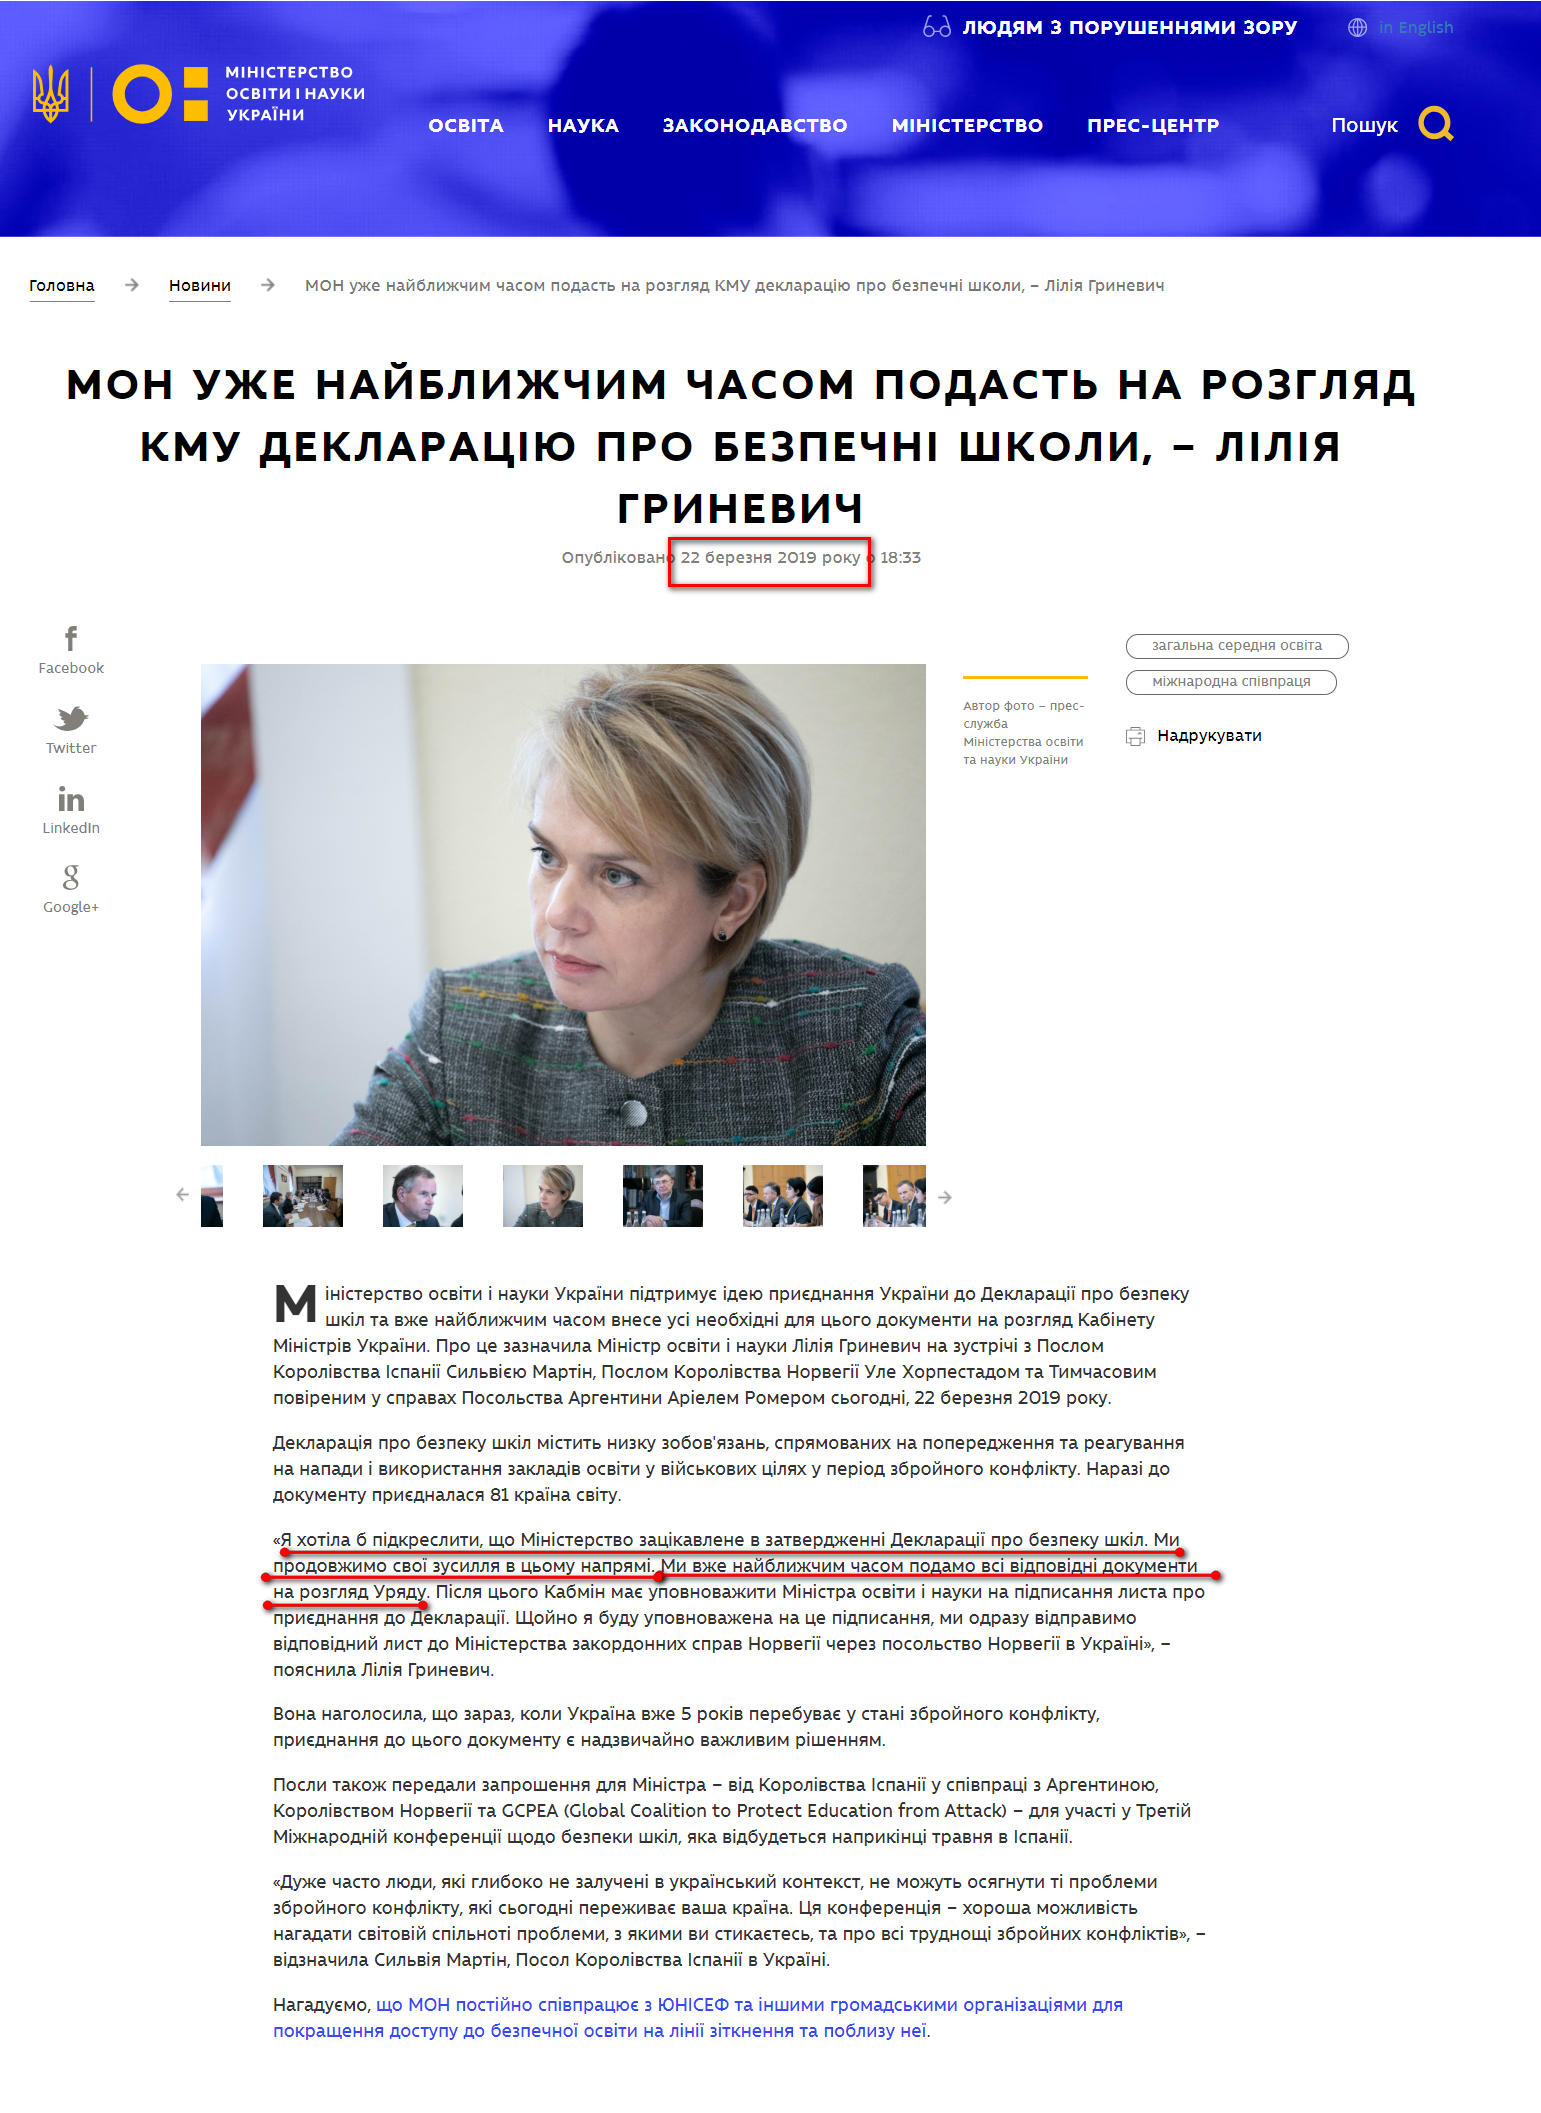 https://mon.gov.ua/ua/news/liliya-grinevich-mon-uzhe-najblizhchim-chasom-podast-na-rozglyad-kmu-deklaraciyu-pro-bezpechni-shkoli